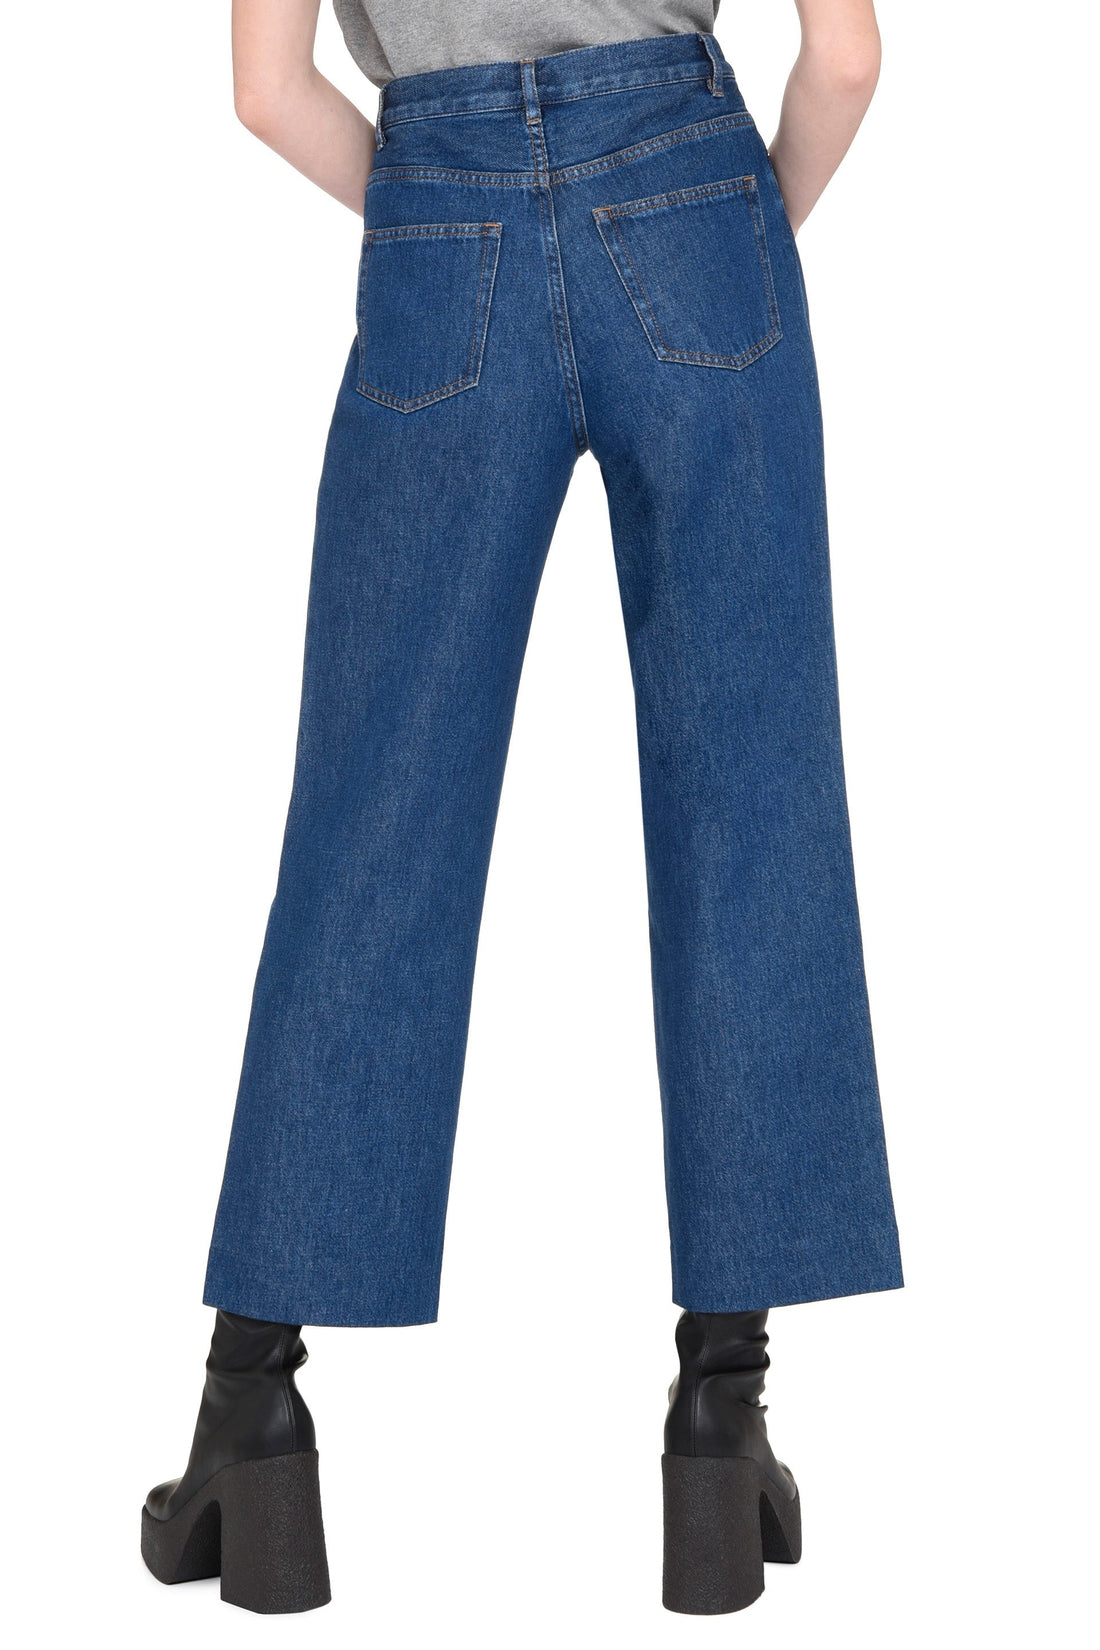 A.P.C.-OUTLET-SALE-New Sallor 5-pocket jeans-ARCHIVIST